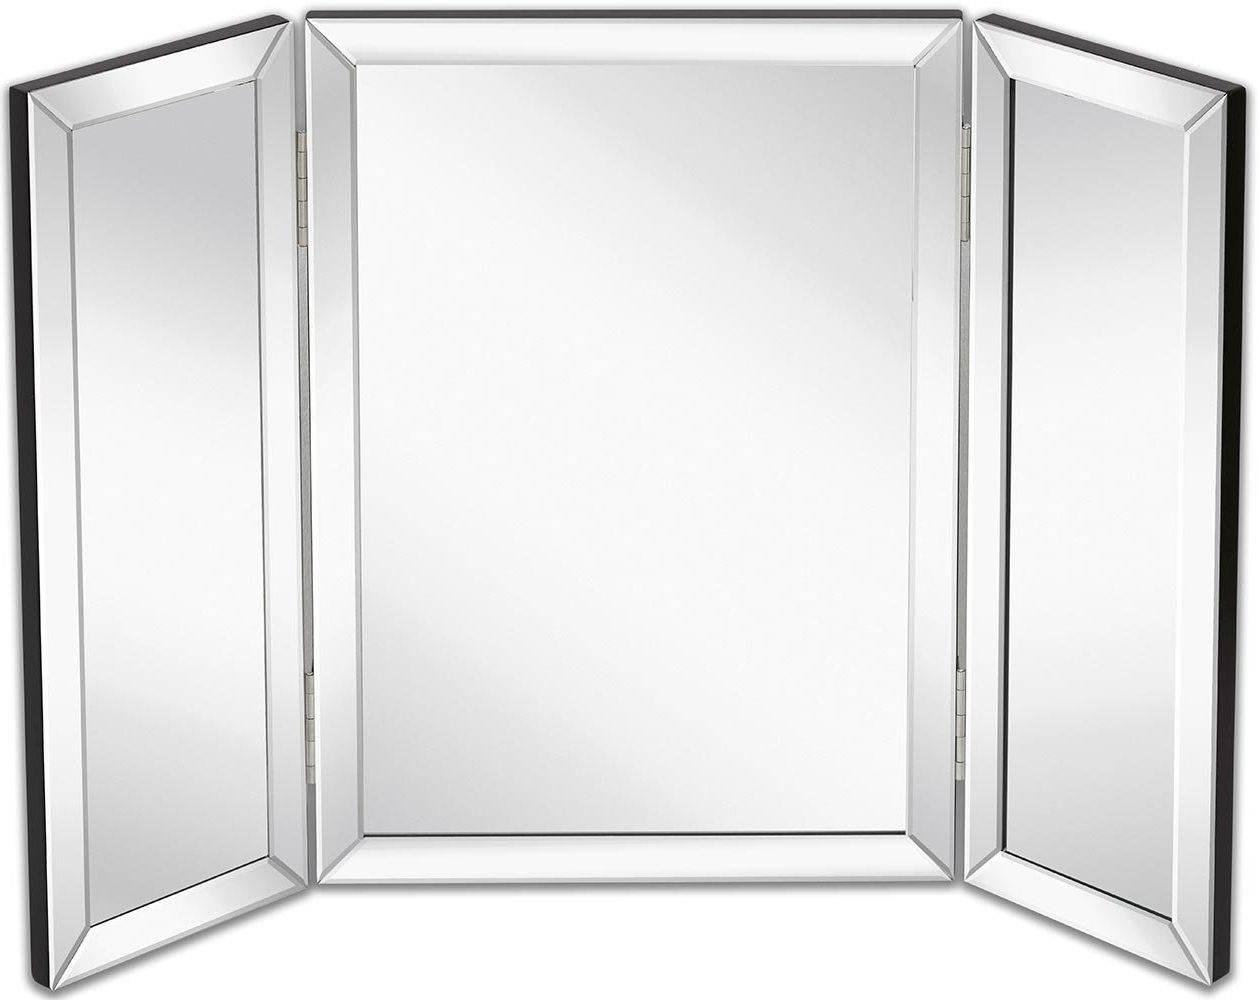 20 Best Tri Fold Wall Mirrors